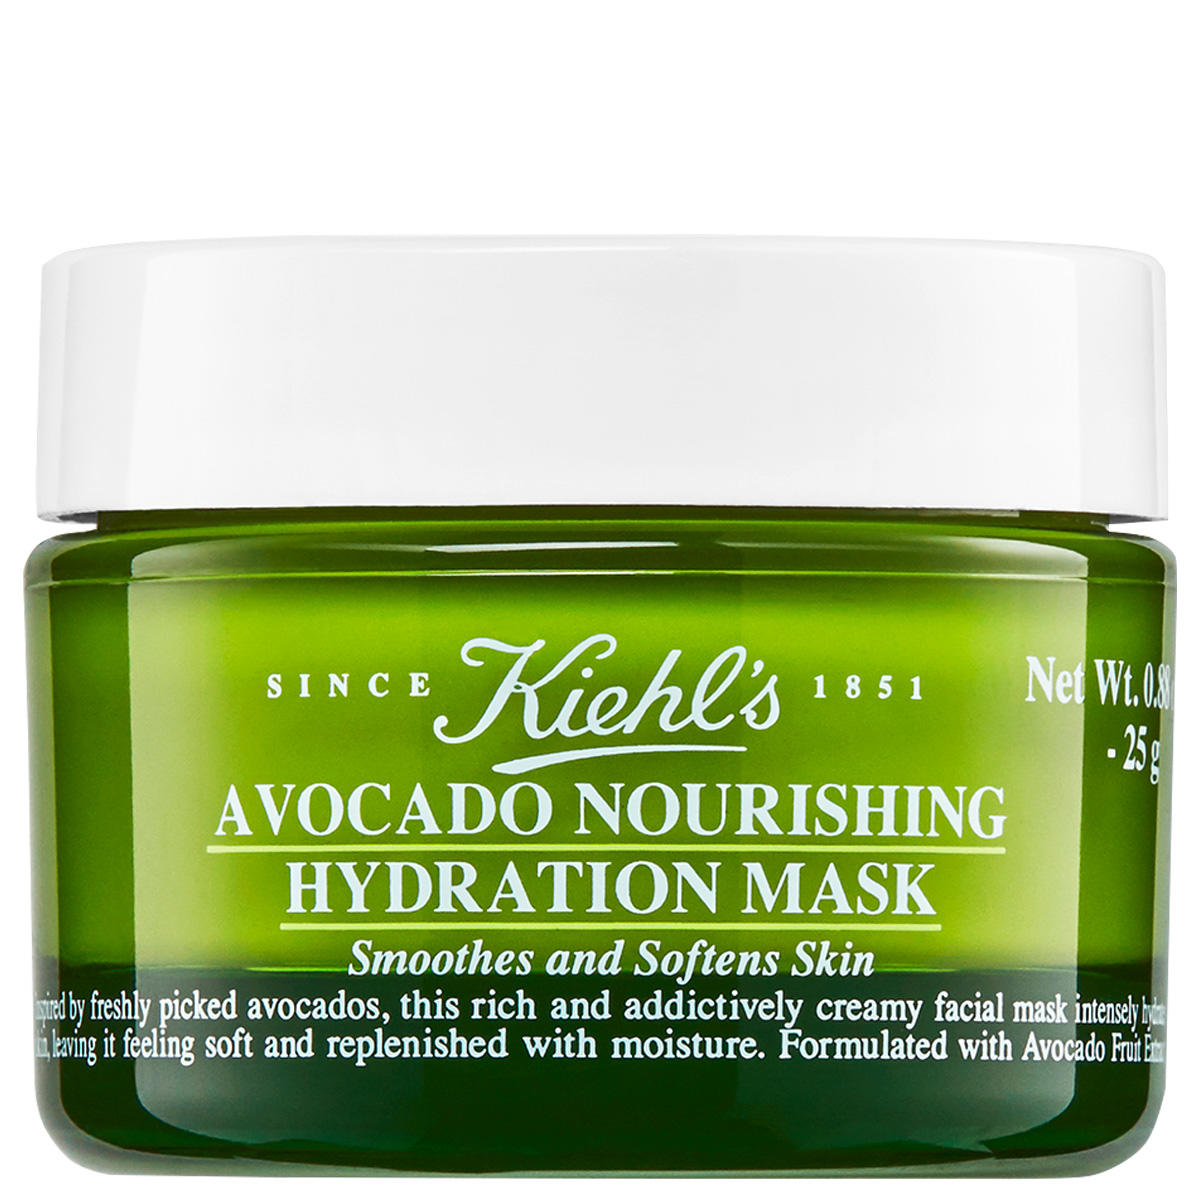 Avocado Nourishing Hydration Mask, Face Mask